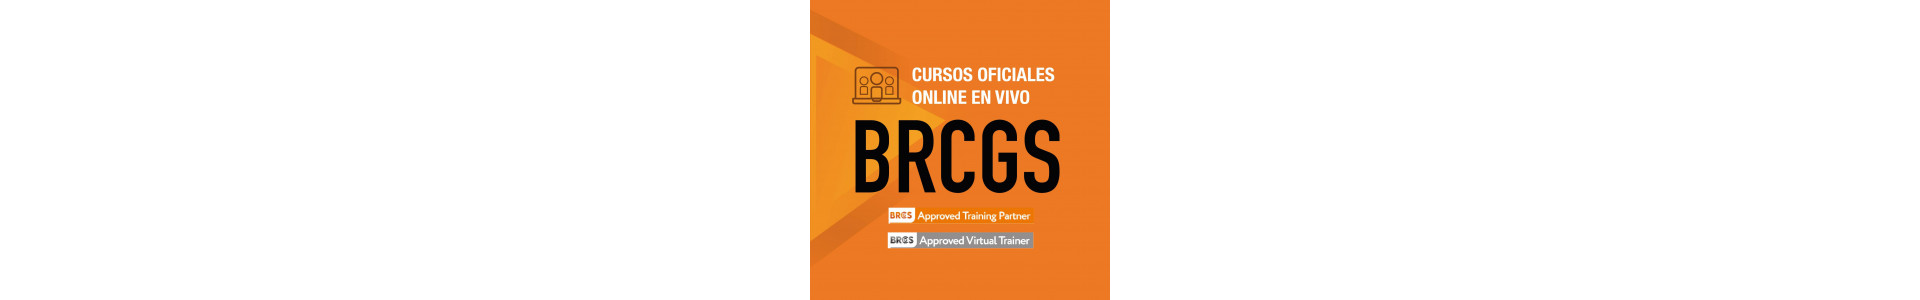 Cursos oficiales | Normas BRCGS